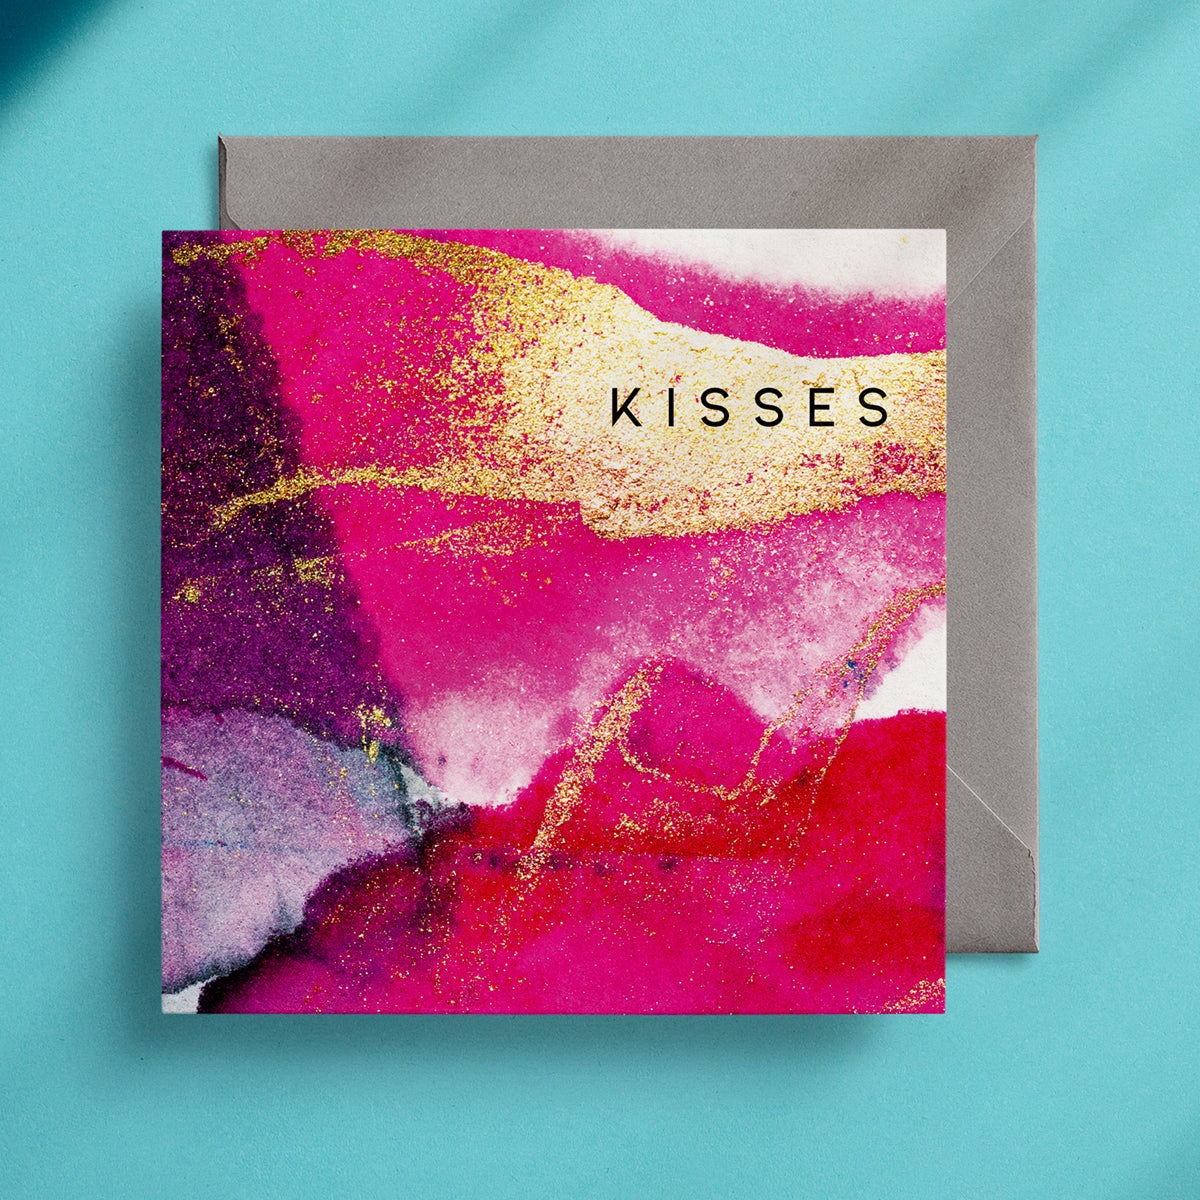 Kisses - ABSTRACT Greeting Card